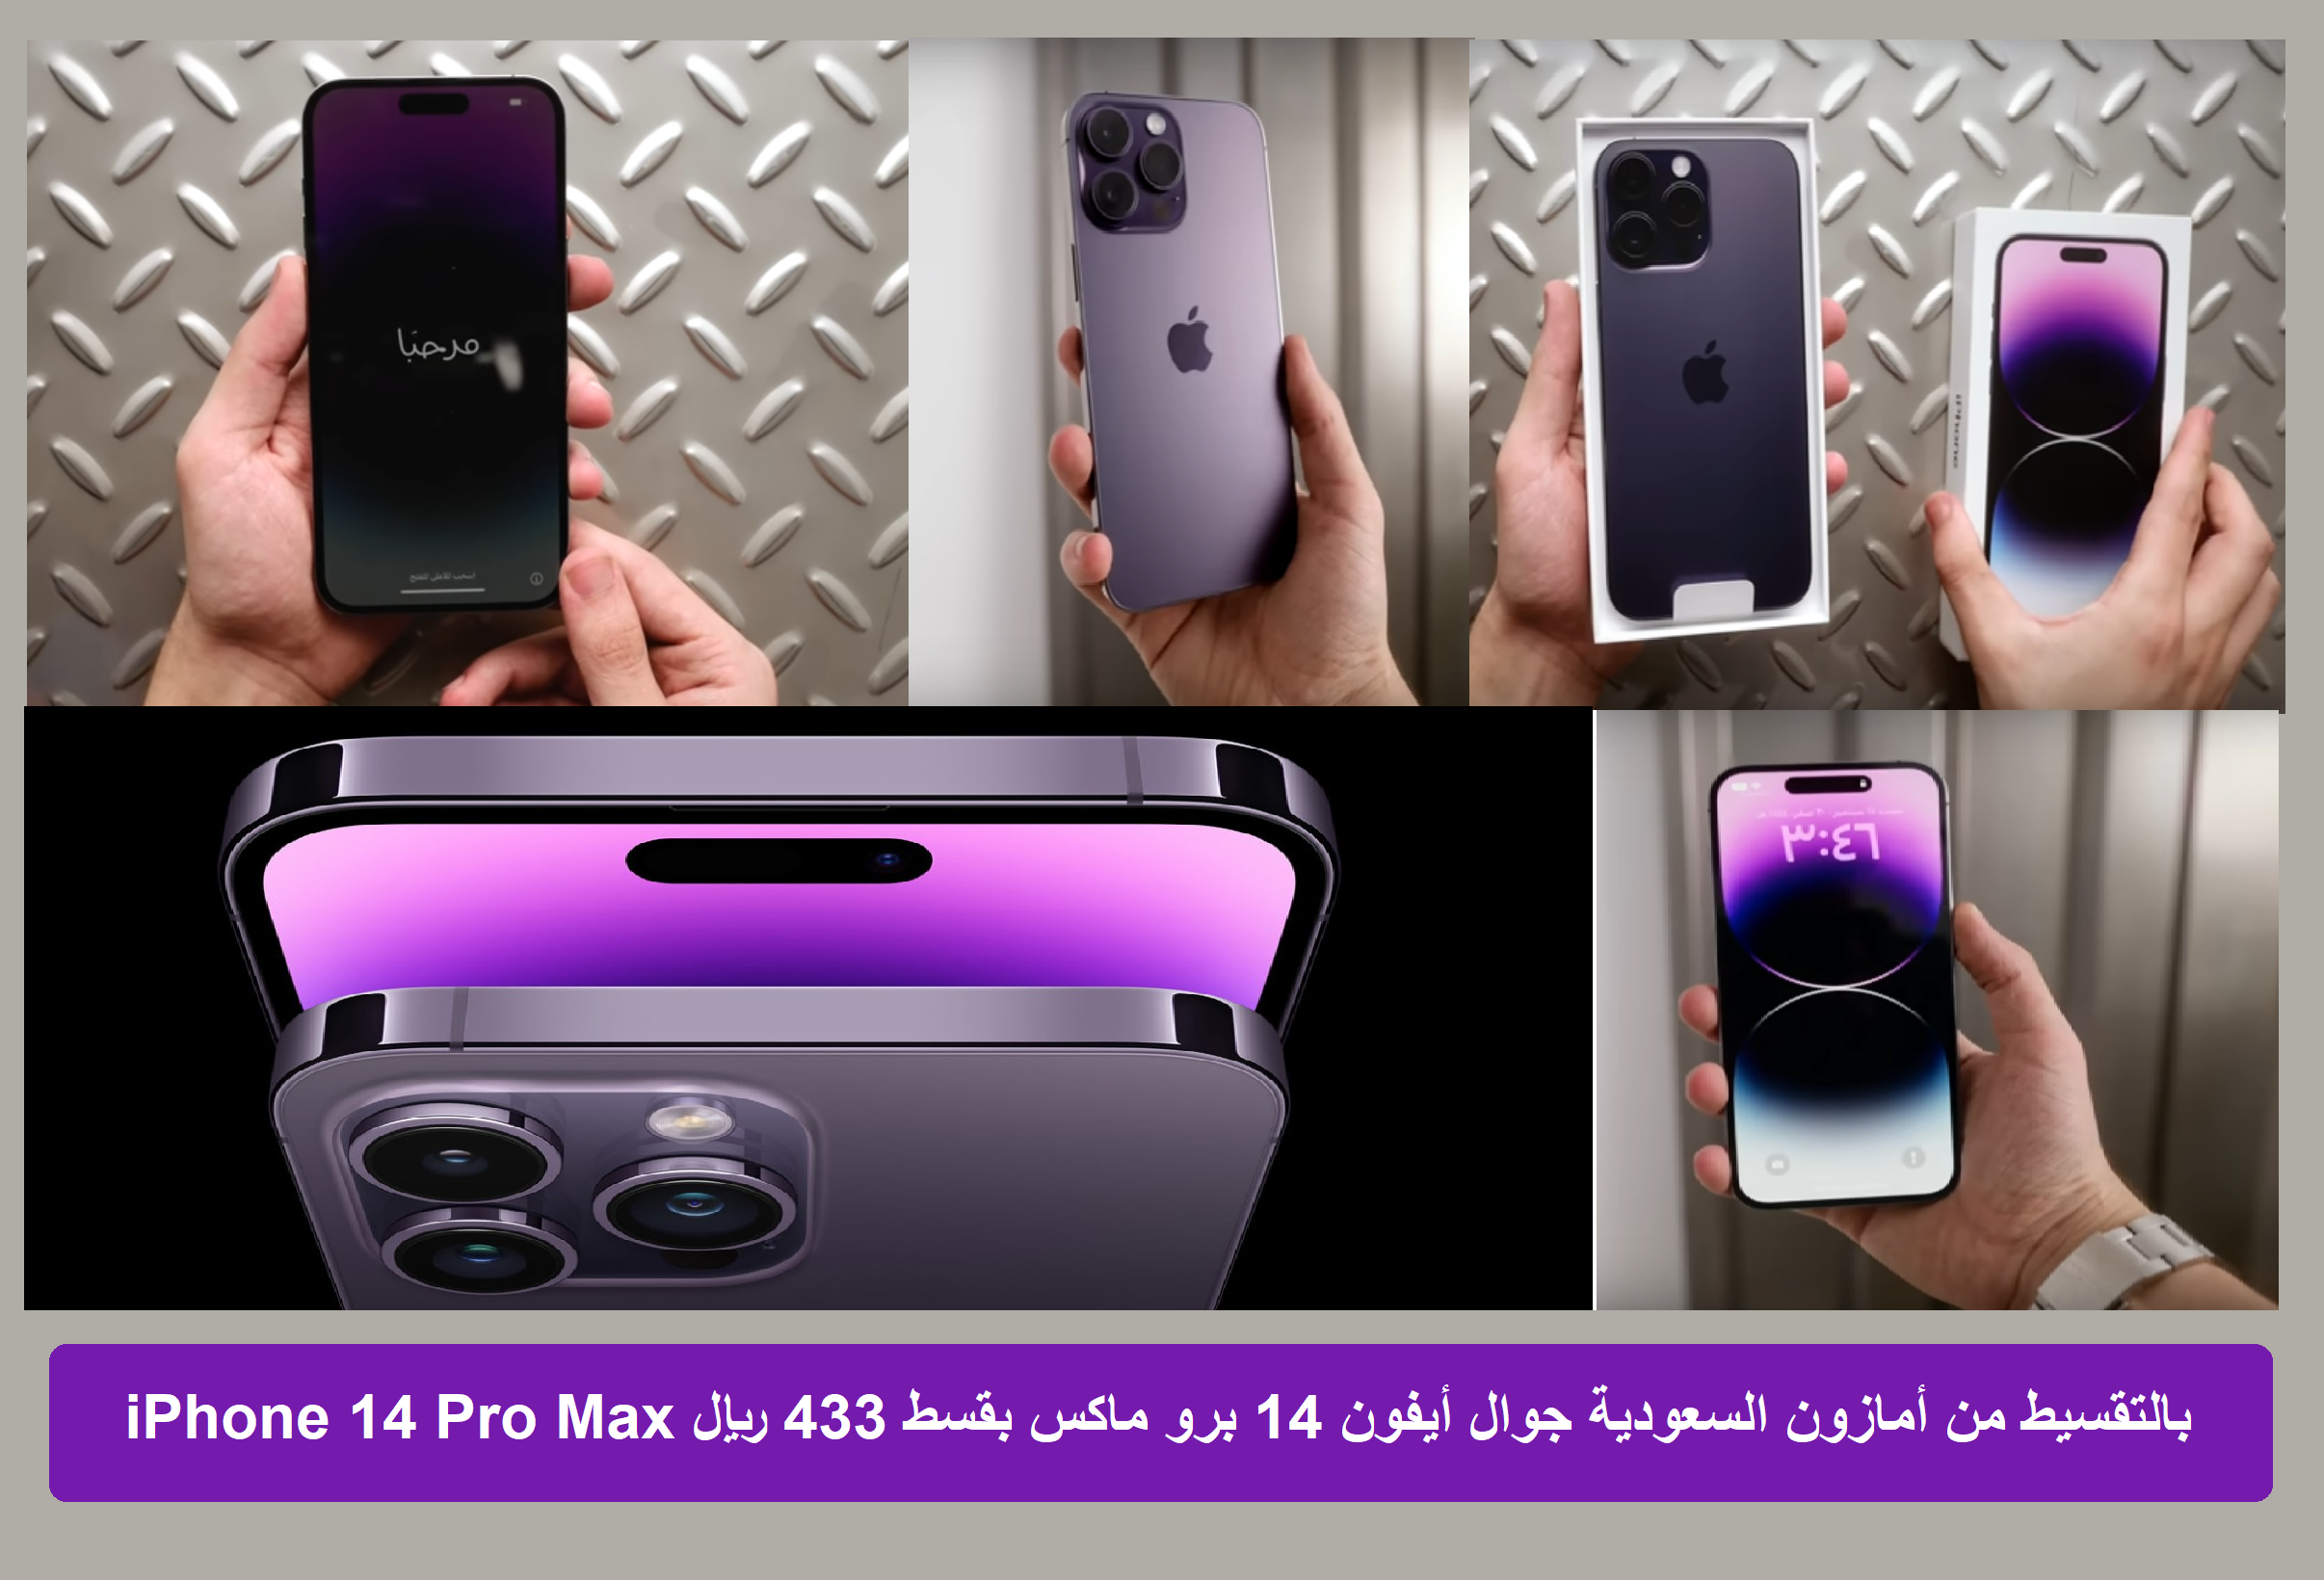 iPhone 14 Pro Max بالتقسيط من أمازون السعودية جوال أيفون 14 برو ماكس الجديد بقسط 433 ريال